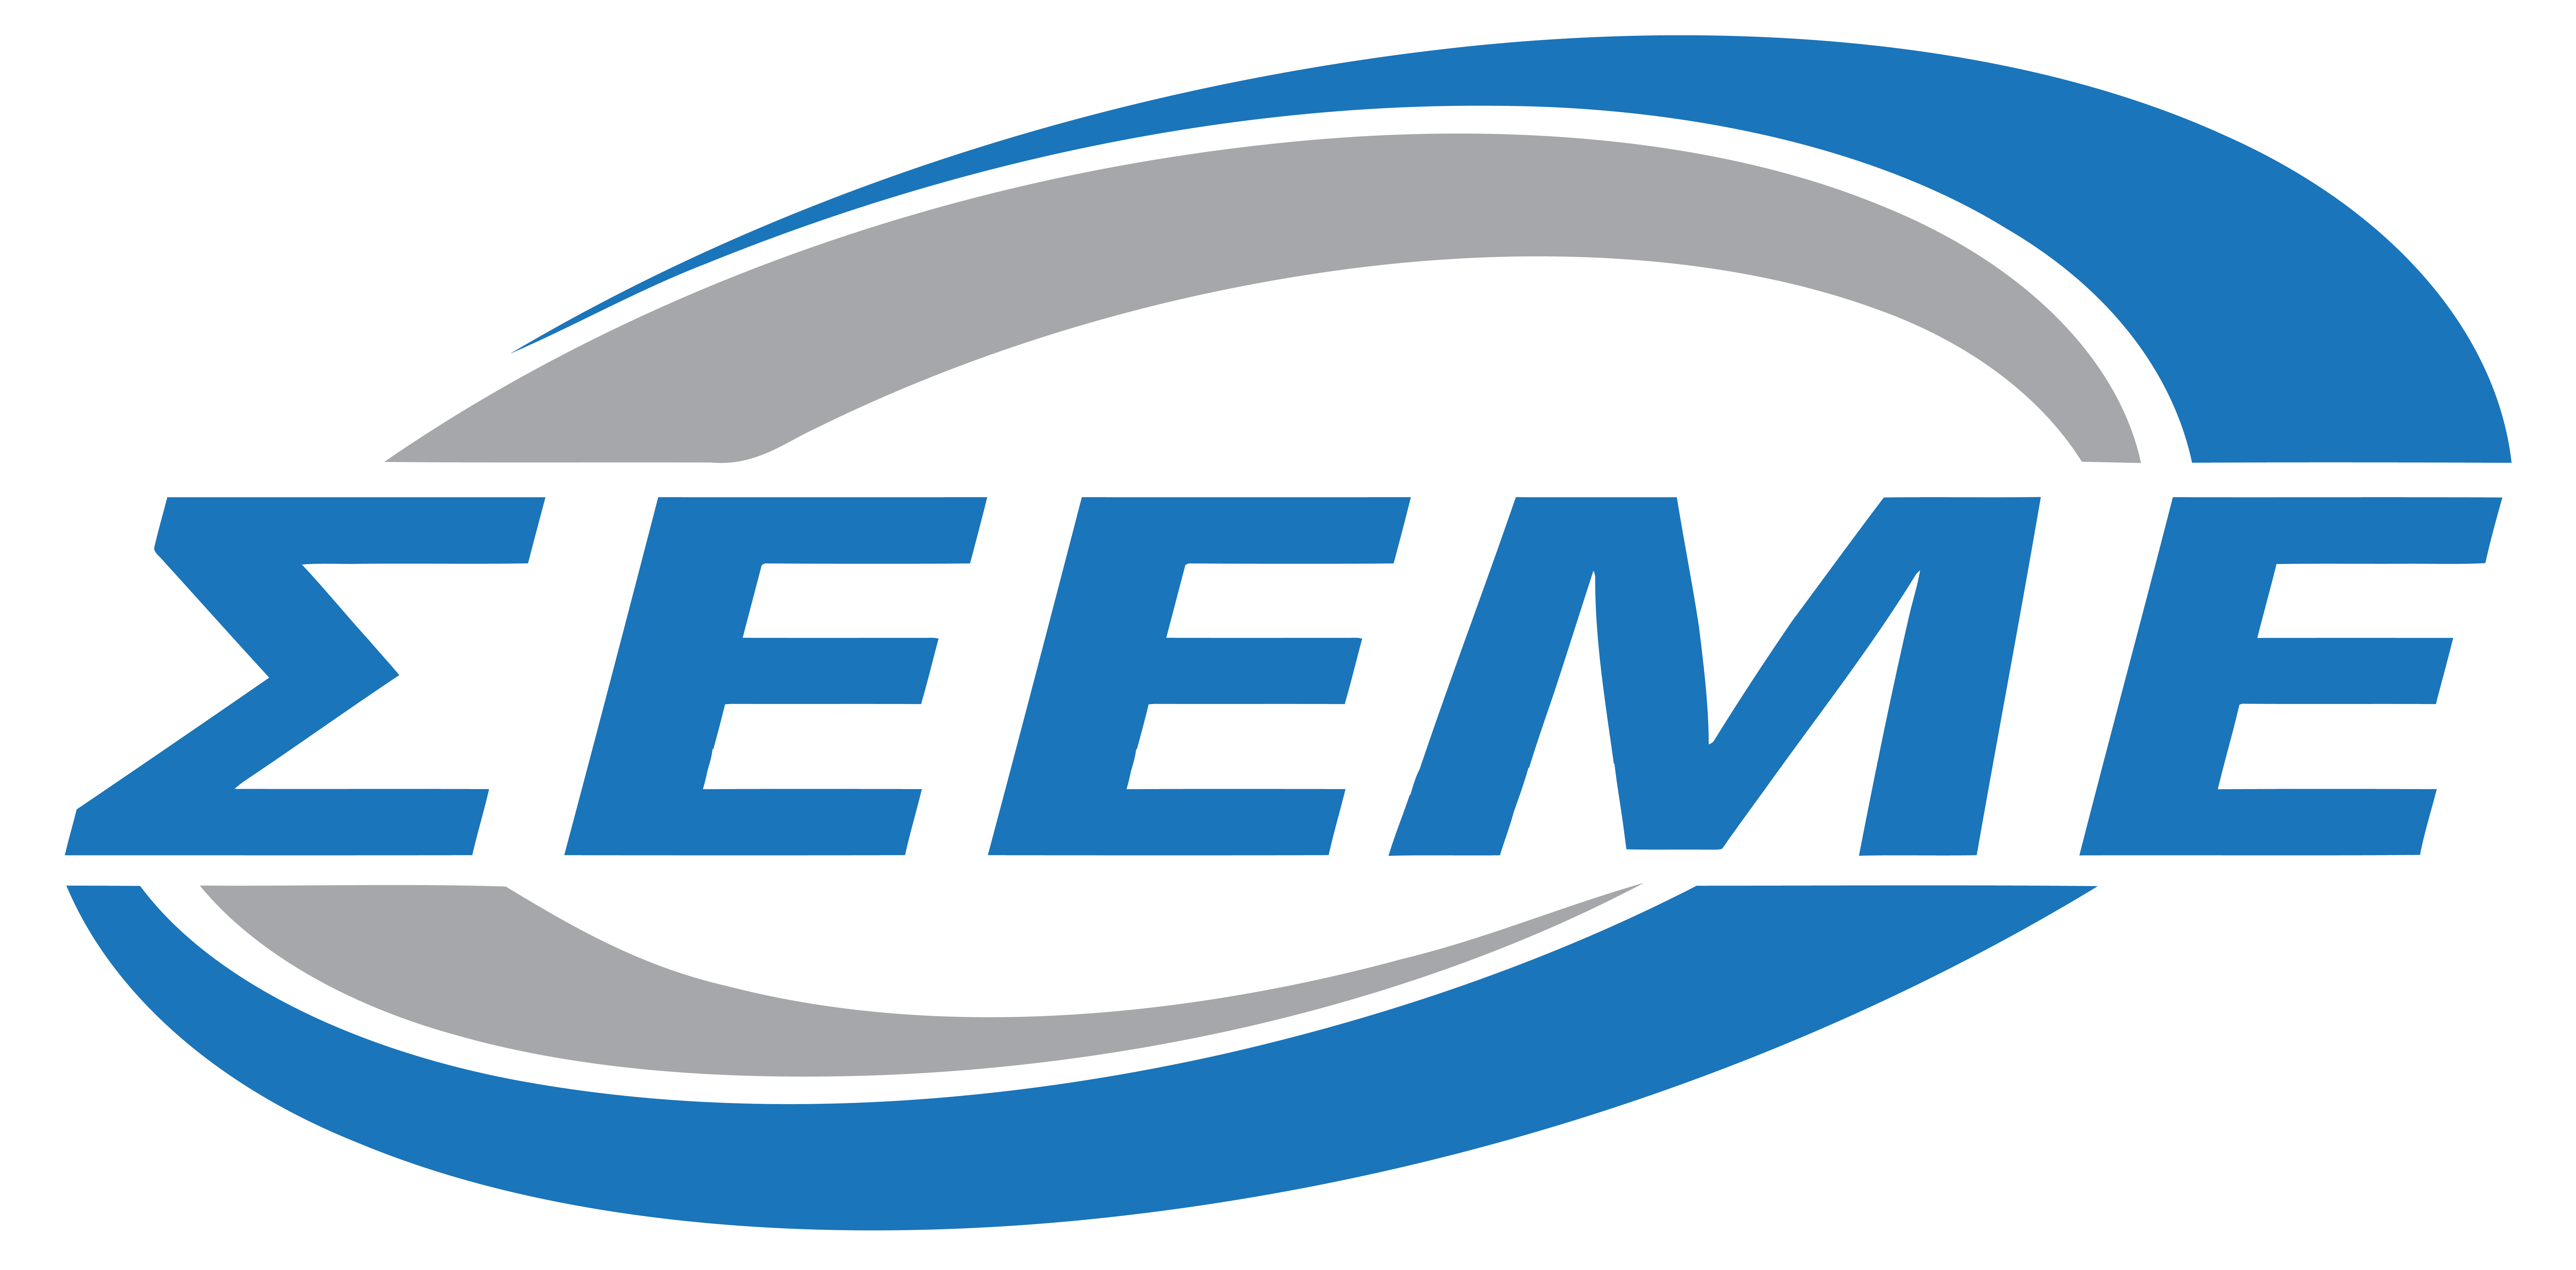 logo SEEME1